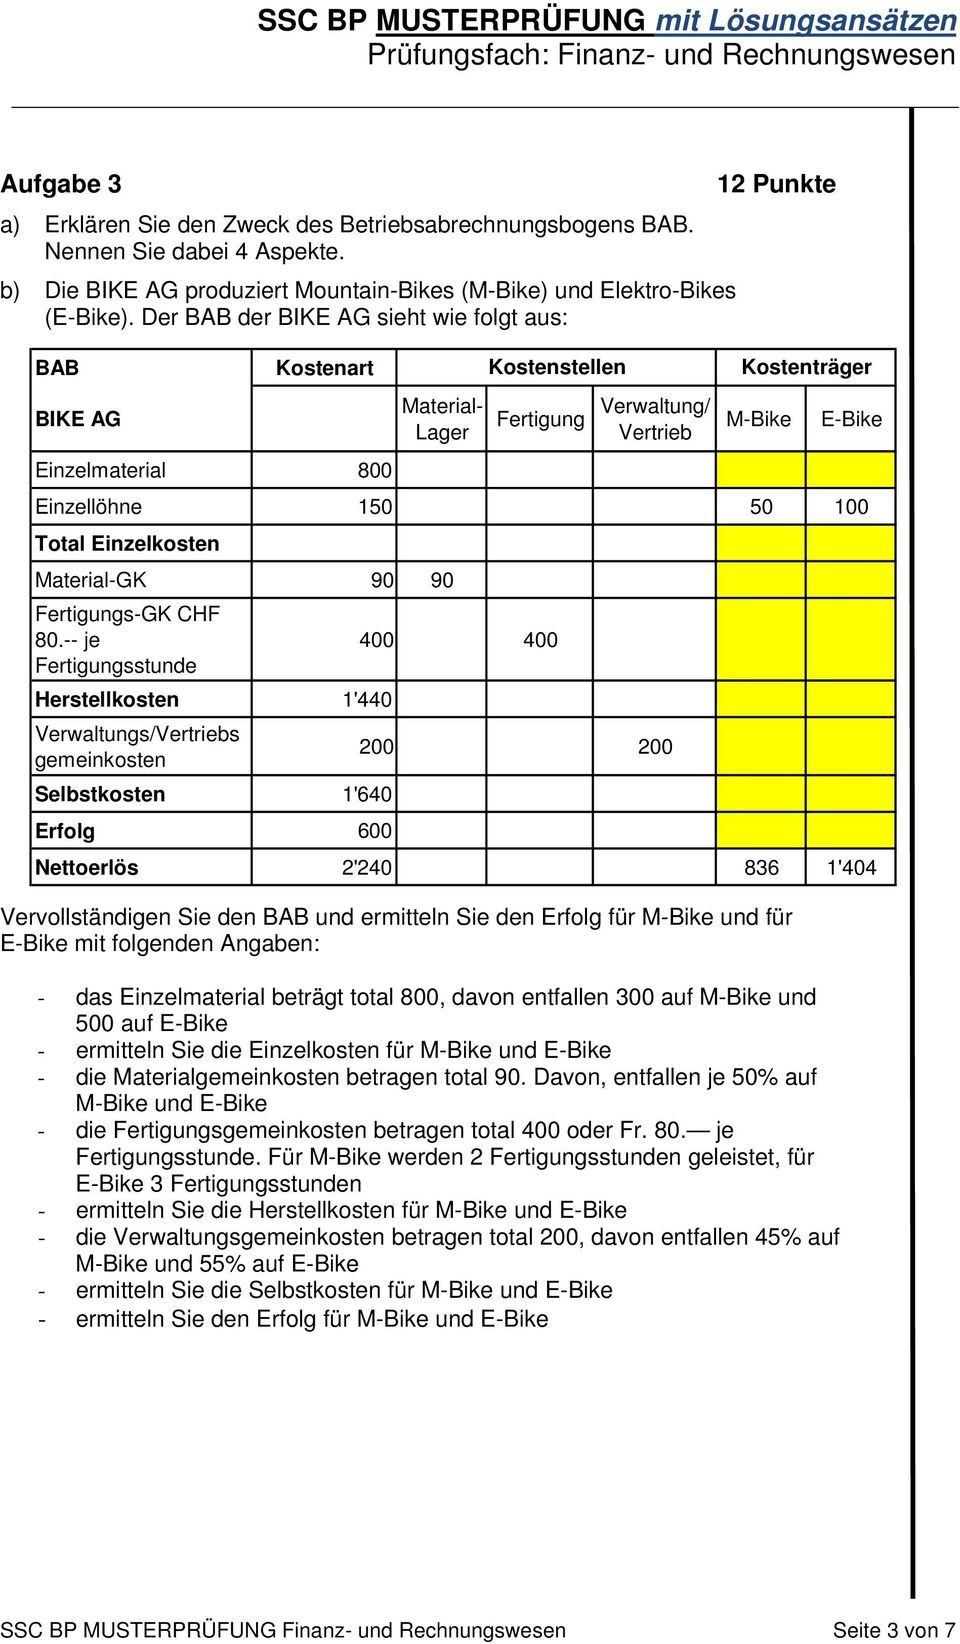 ermitteln Sie den Erfolg für M-Bike und für E-Bike mit folgenden Angaben: Kostenträger - das Einzelmaterial beträgt total 800, davon entfallen 300 auf M-Bike und 500 auf E-Bike - ermitteln Sie die